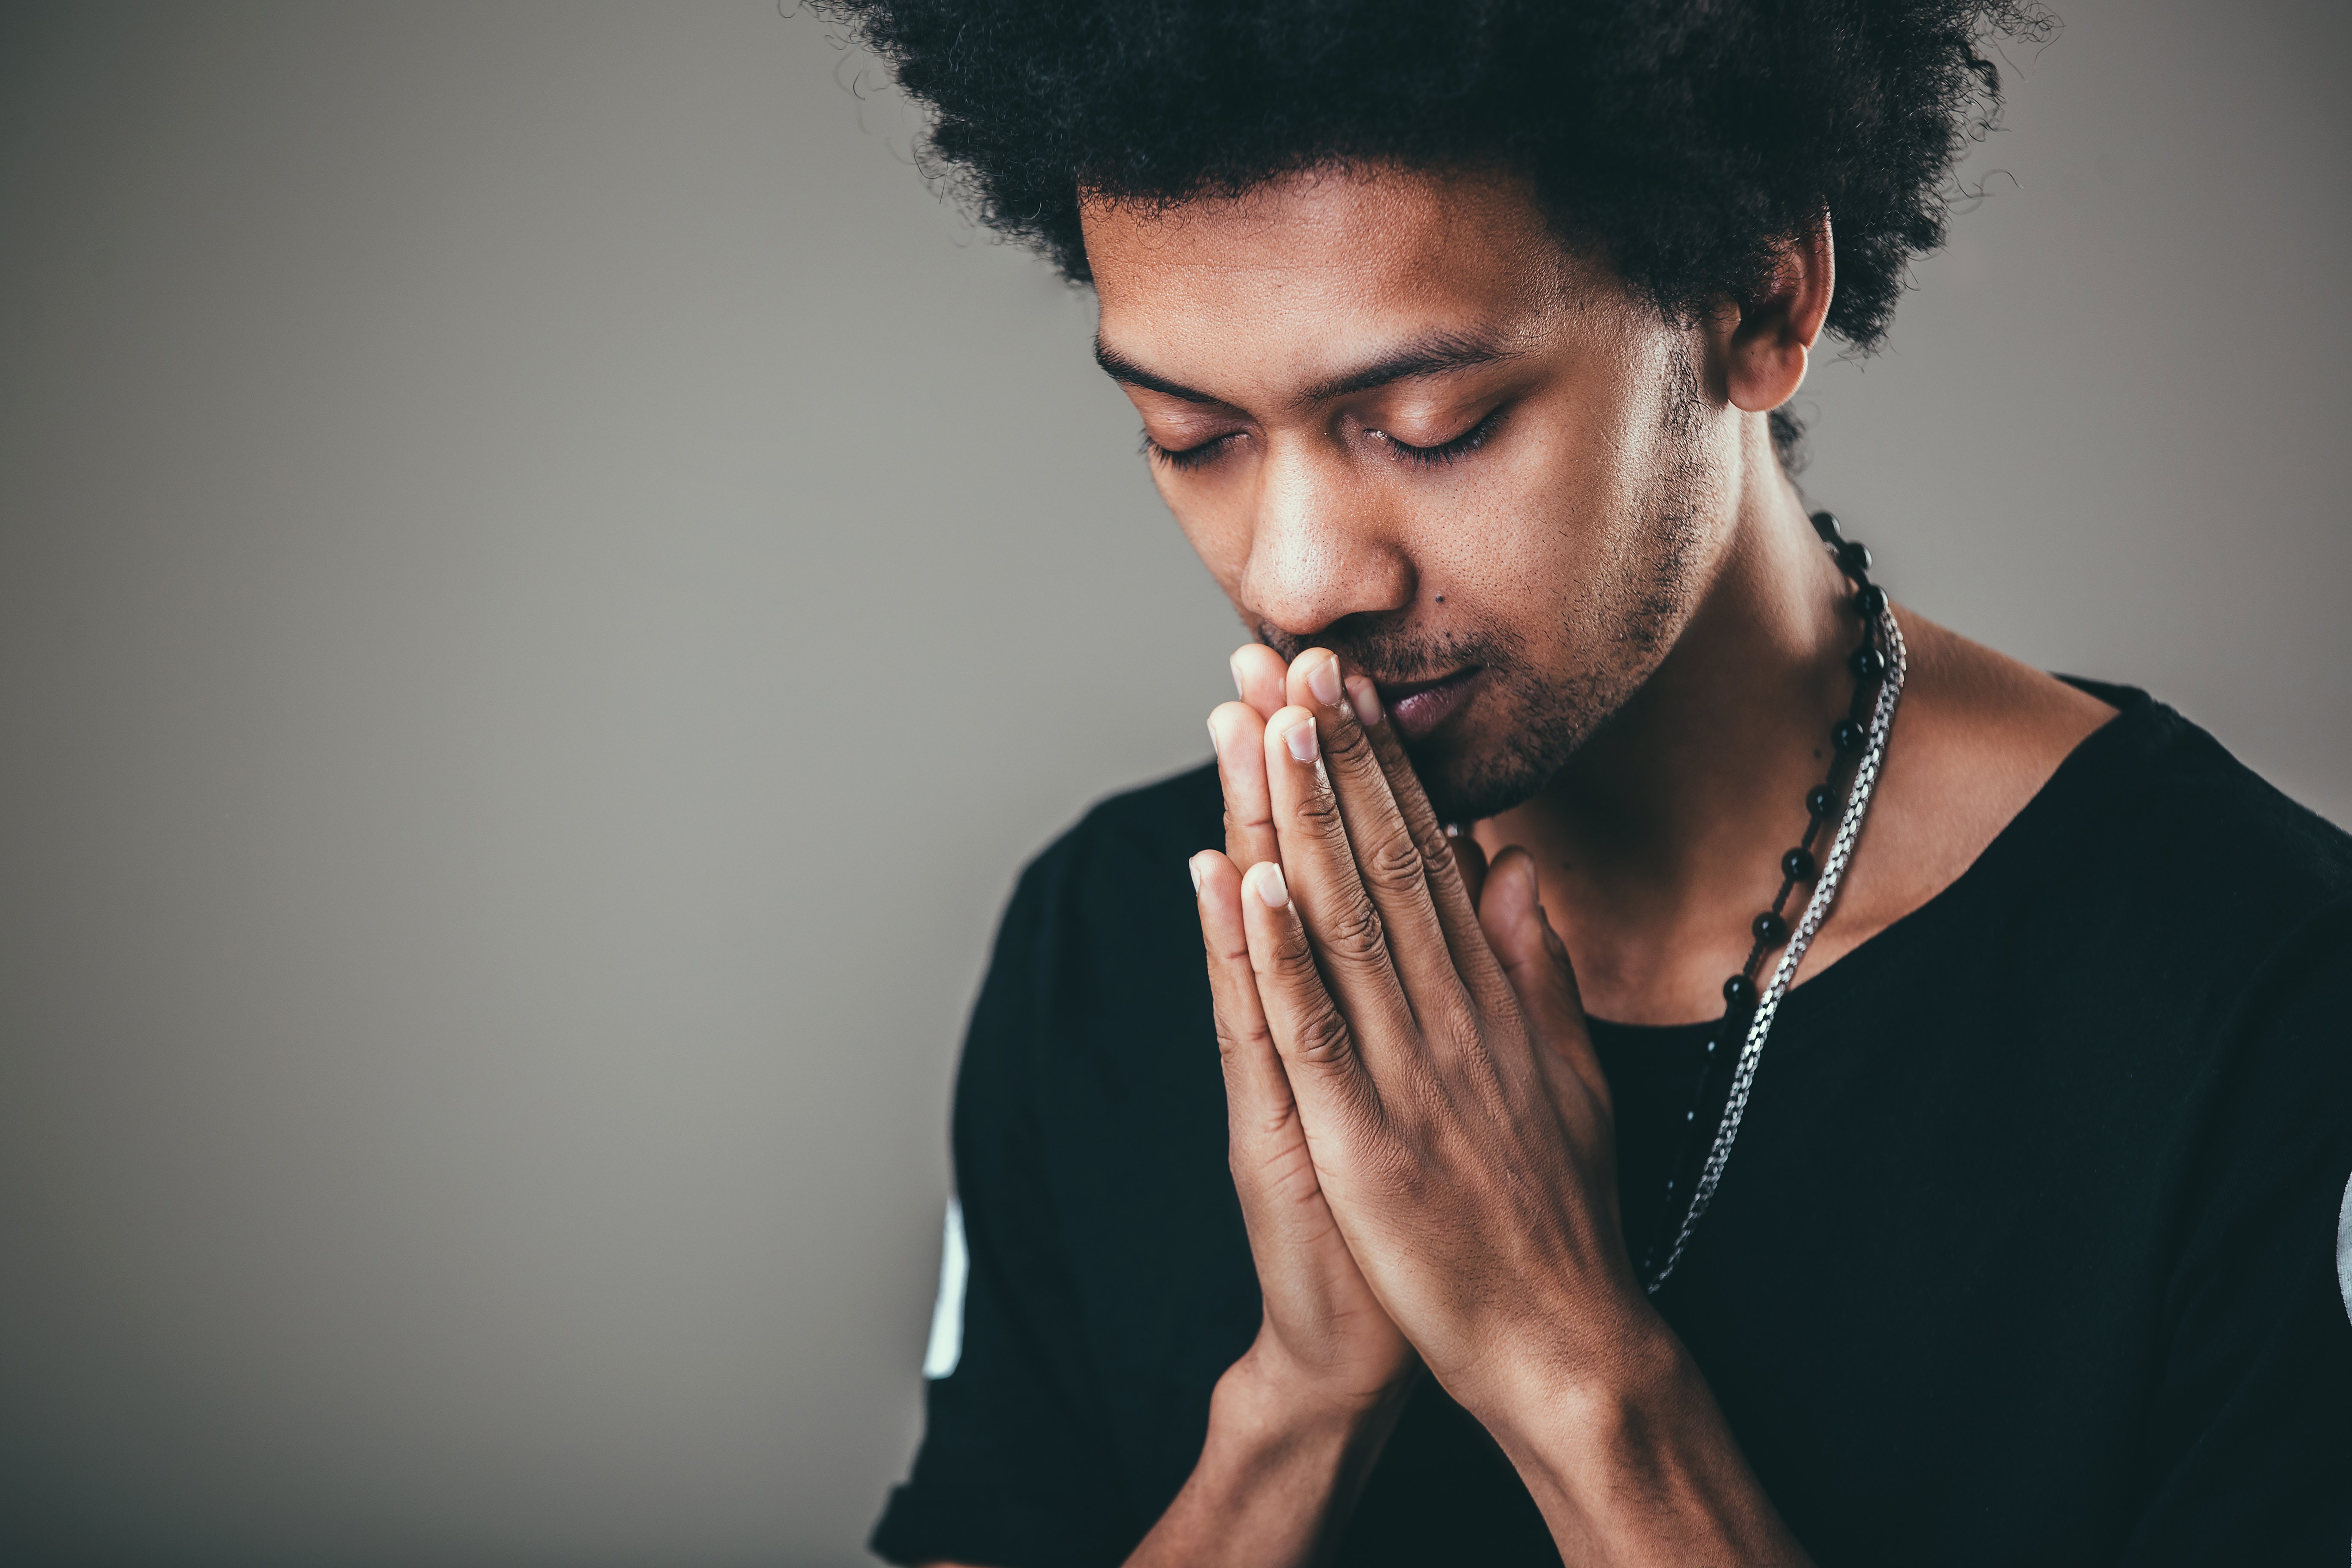 Eine Person, die betet. | Quelle: Shutterstock